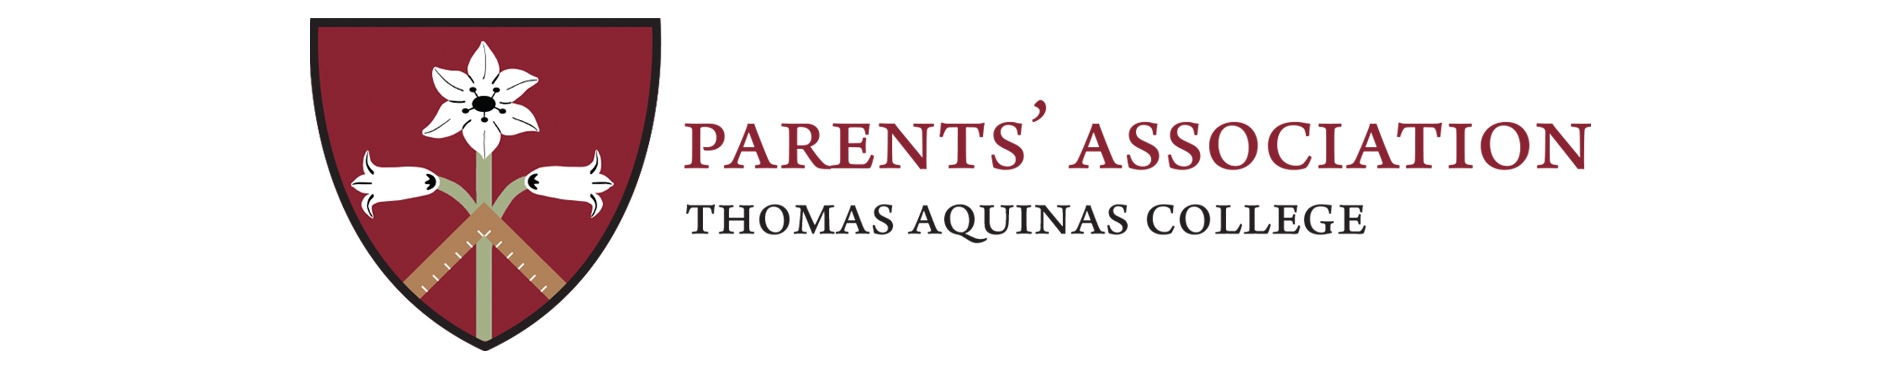 Parent's Association of Thomas Aquinas College